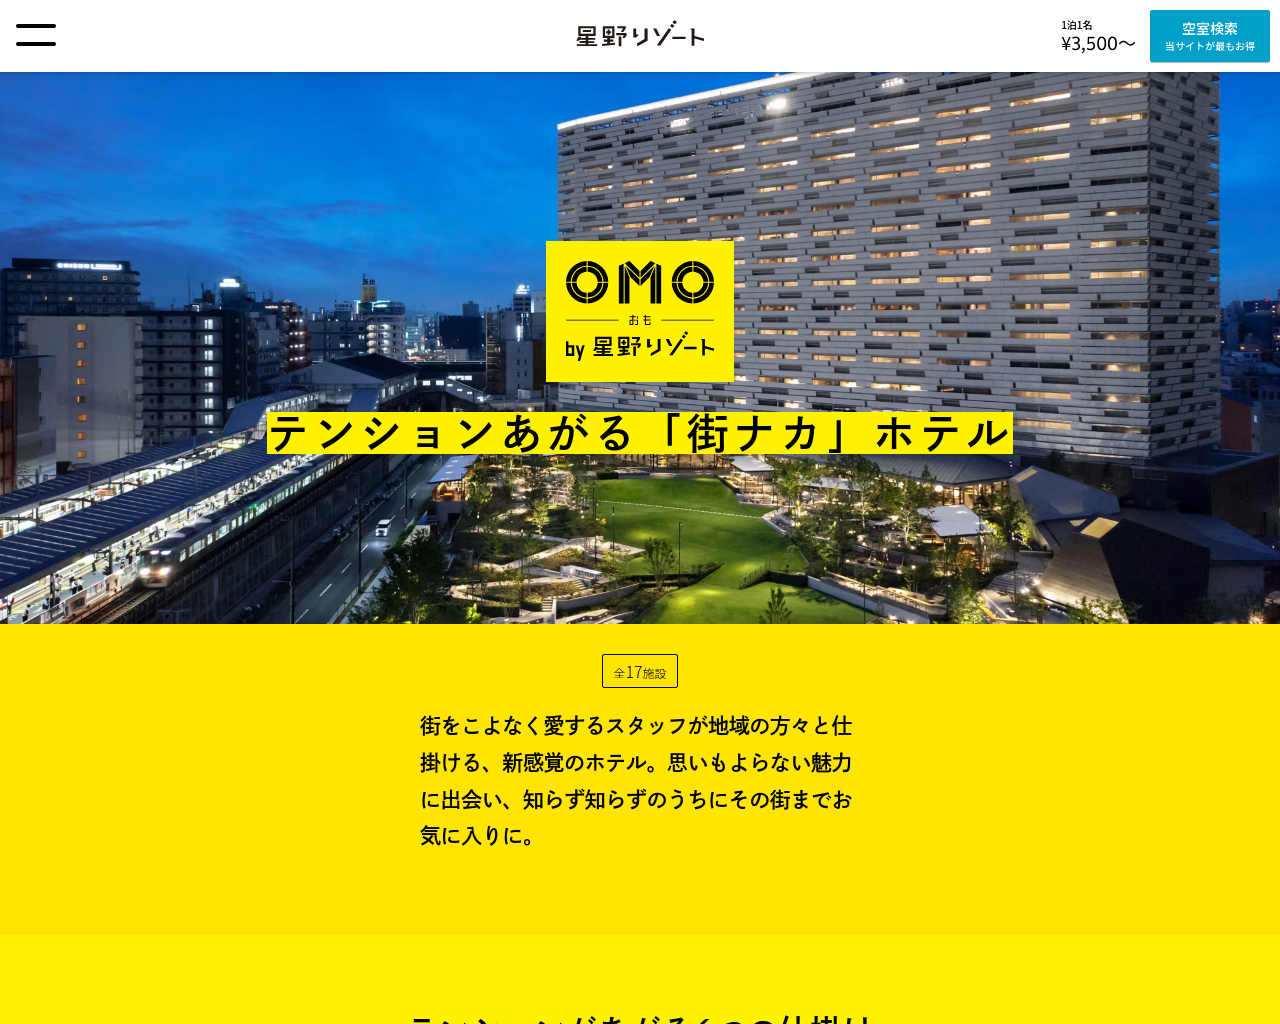 omo-hotels.com